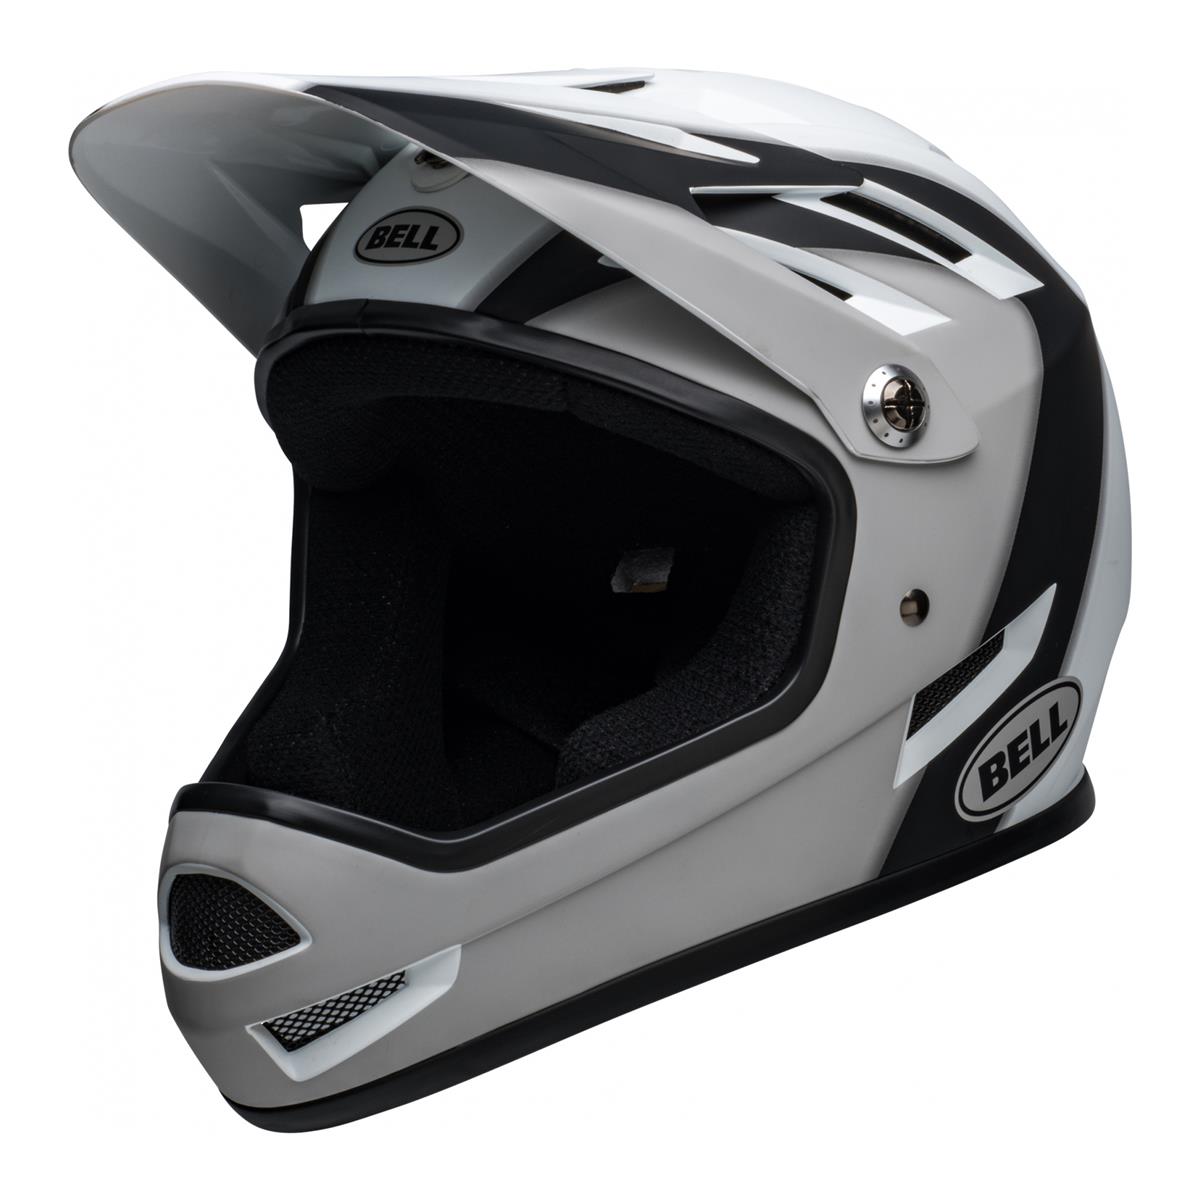 Sanction Full Face Helmet Black/White Size M (55-57cm)